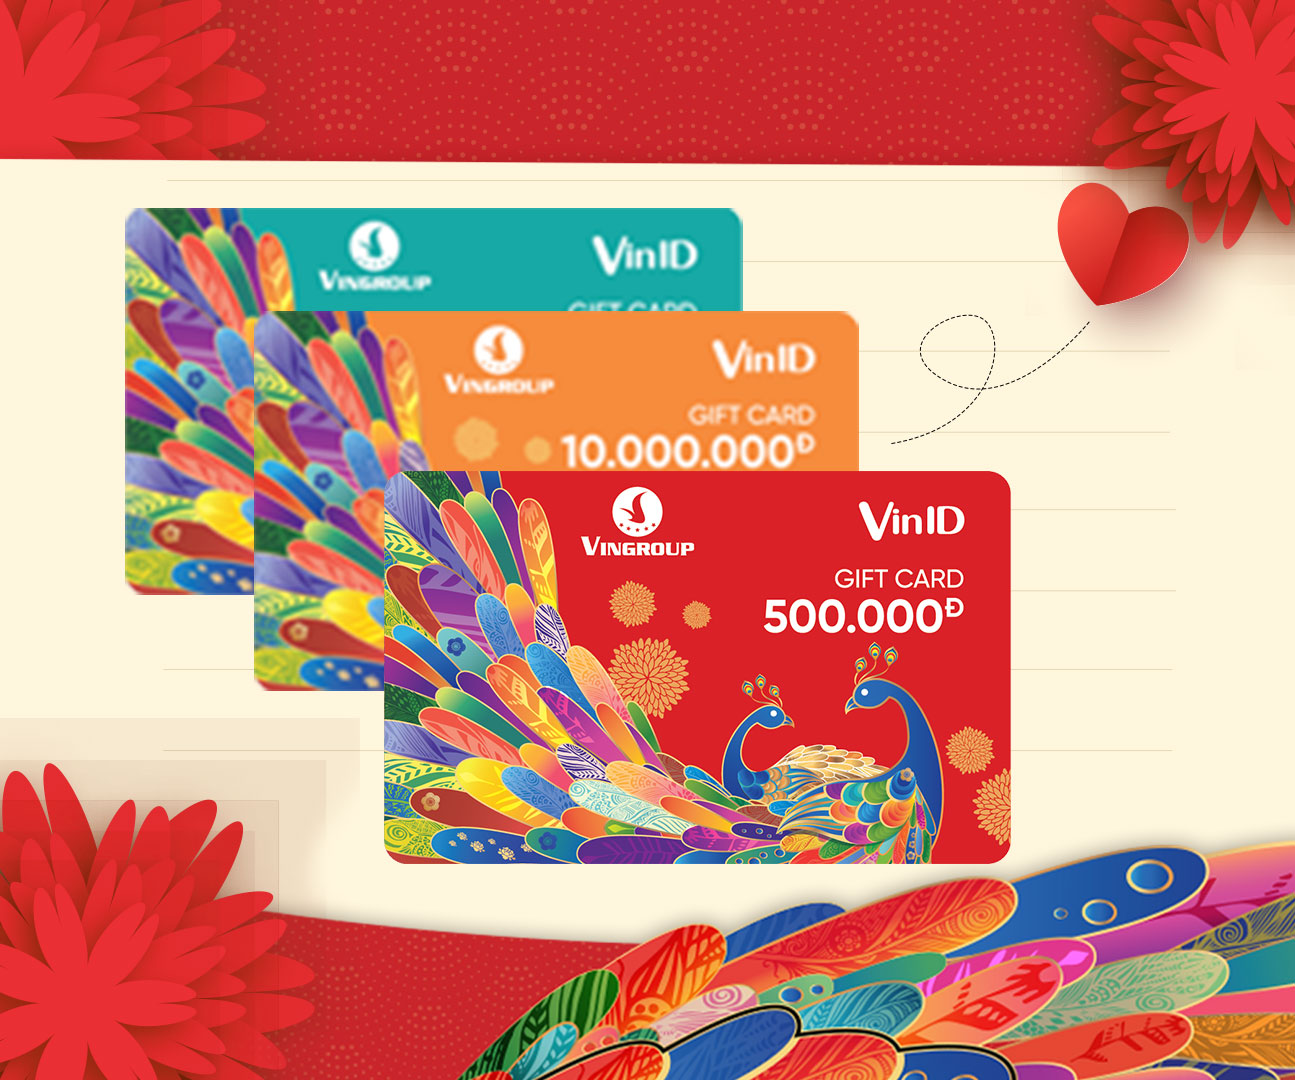 VinID Gift Card - Thẻ quà tặng VinID